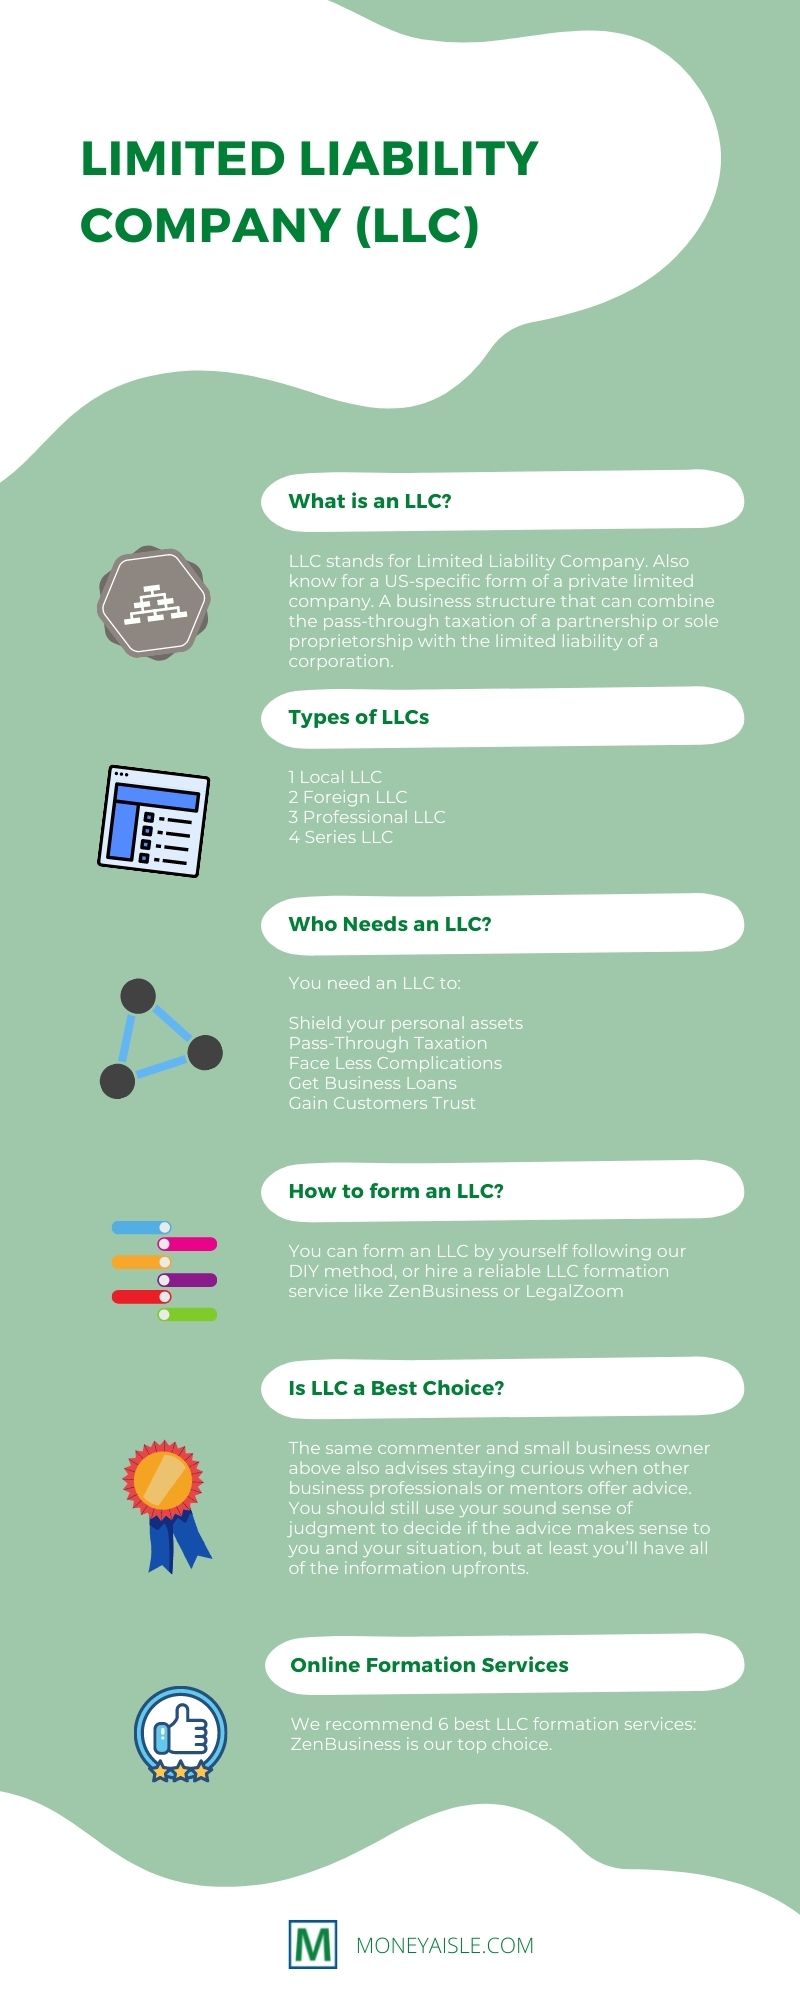 What is an LLC?